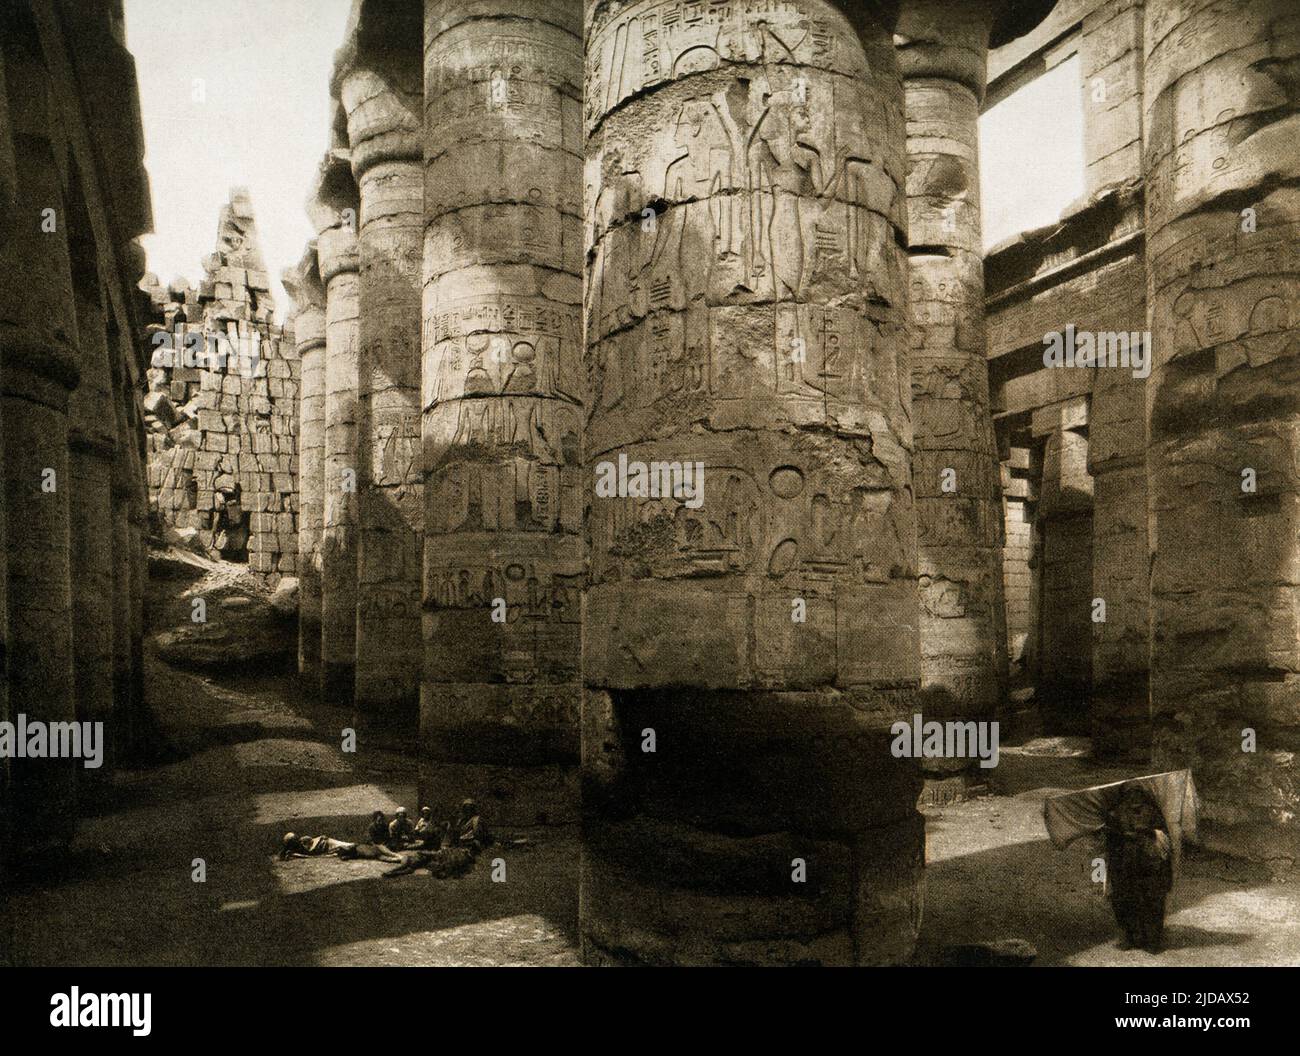 Questa immagine del 1910 mostra le rovine della Sala delle colonne a Karnak. La Sala Grande Hypotyle Karnak è composta da 134 colonne giganti in pietra arenaria a forma di gambi di papiro. Dodici grandi colonne nella sua navata centrale sono alte più di 70 metri e sono tappate da enormi capitelli aperti in fiore di papiro. L'asse est-ovest principale della sala Hypotyle è dominato da una doppia fila di 12 colonne giganti. Questa immagine proviene da una fotografia in Egitto degli archeologi tedeschi Ebers e Junghaendel. Foto Stock